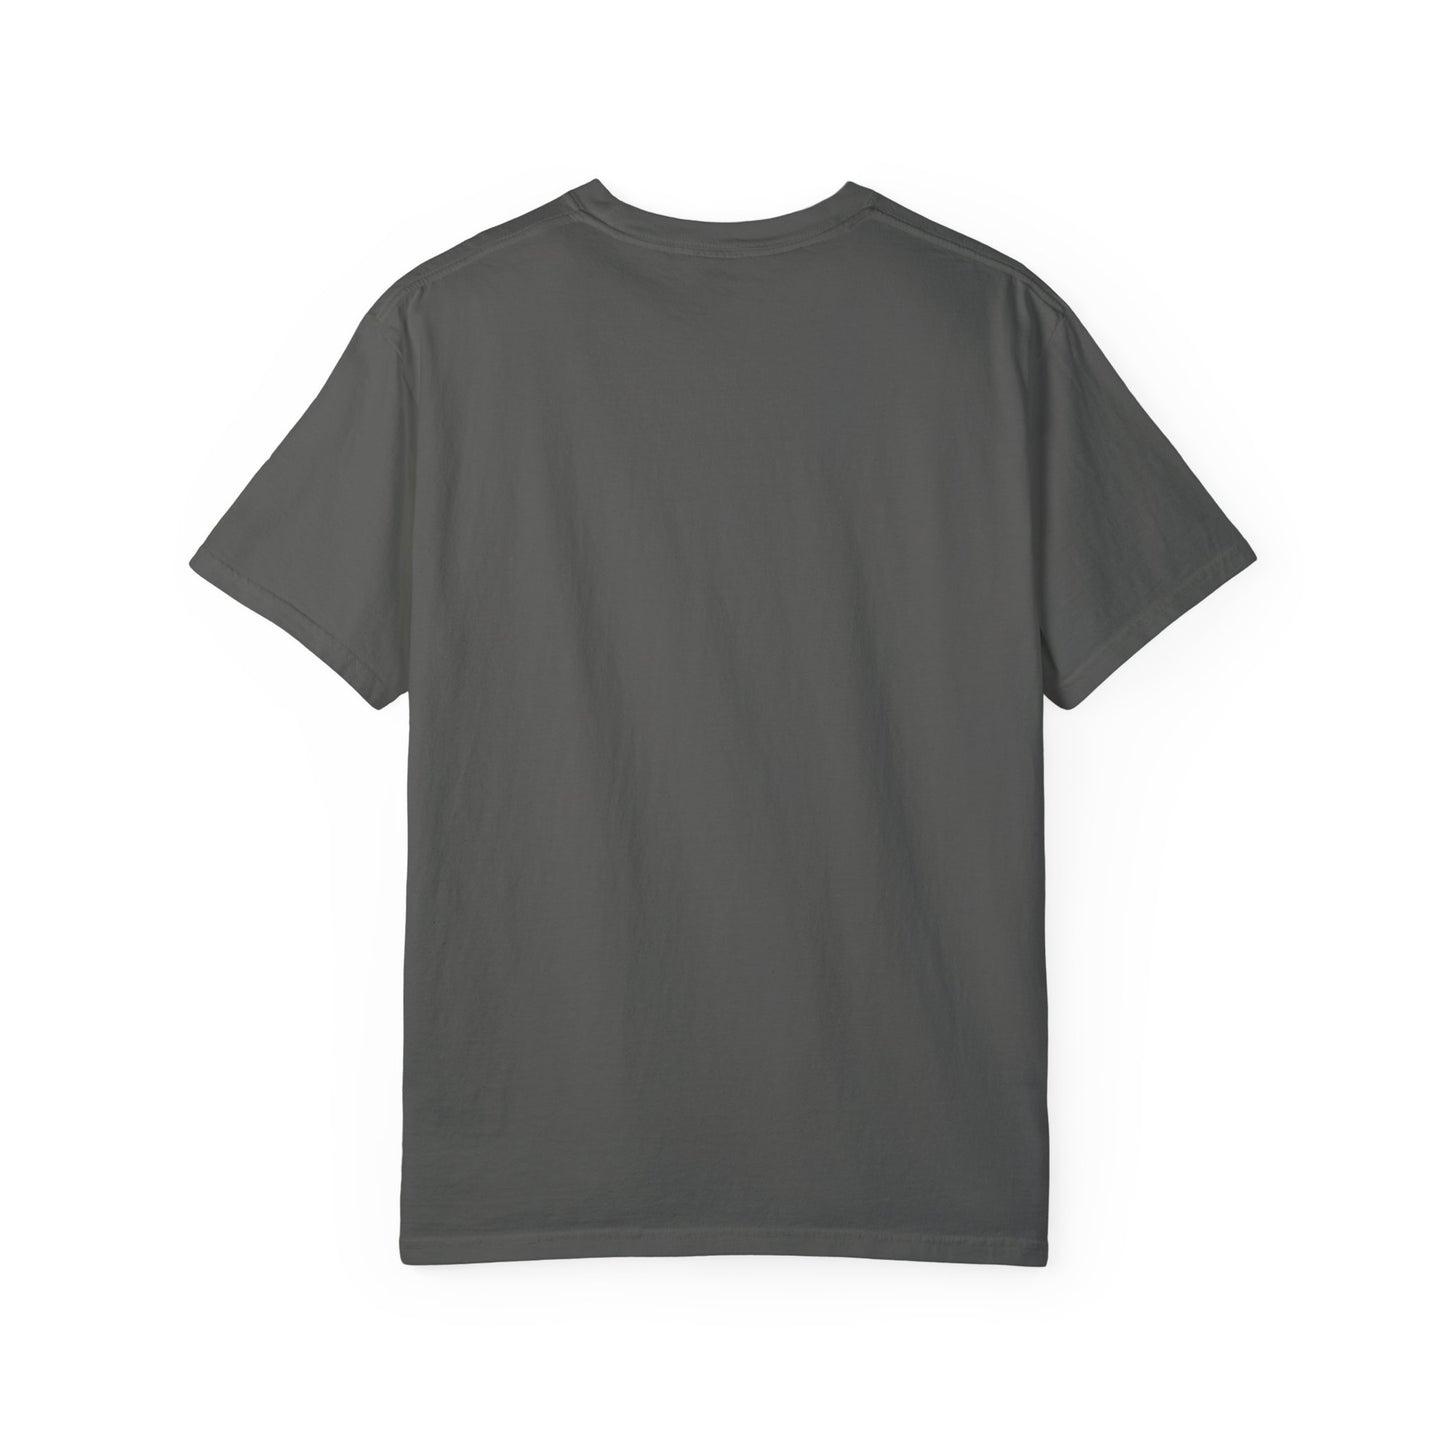 Blessings Unisex Garment-Dyed T-shirt